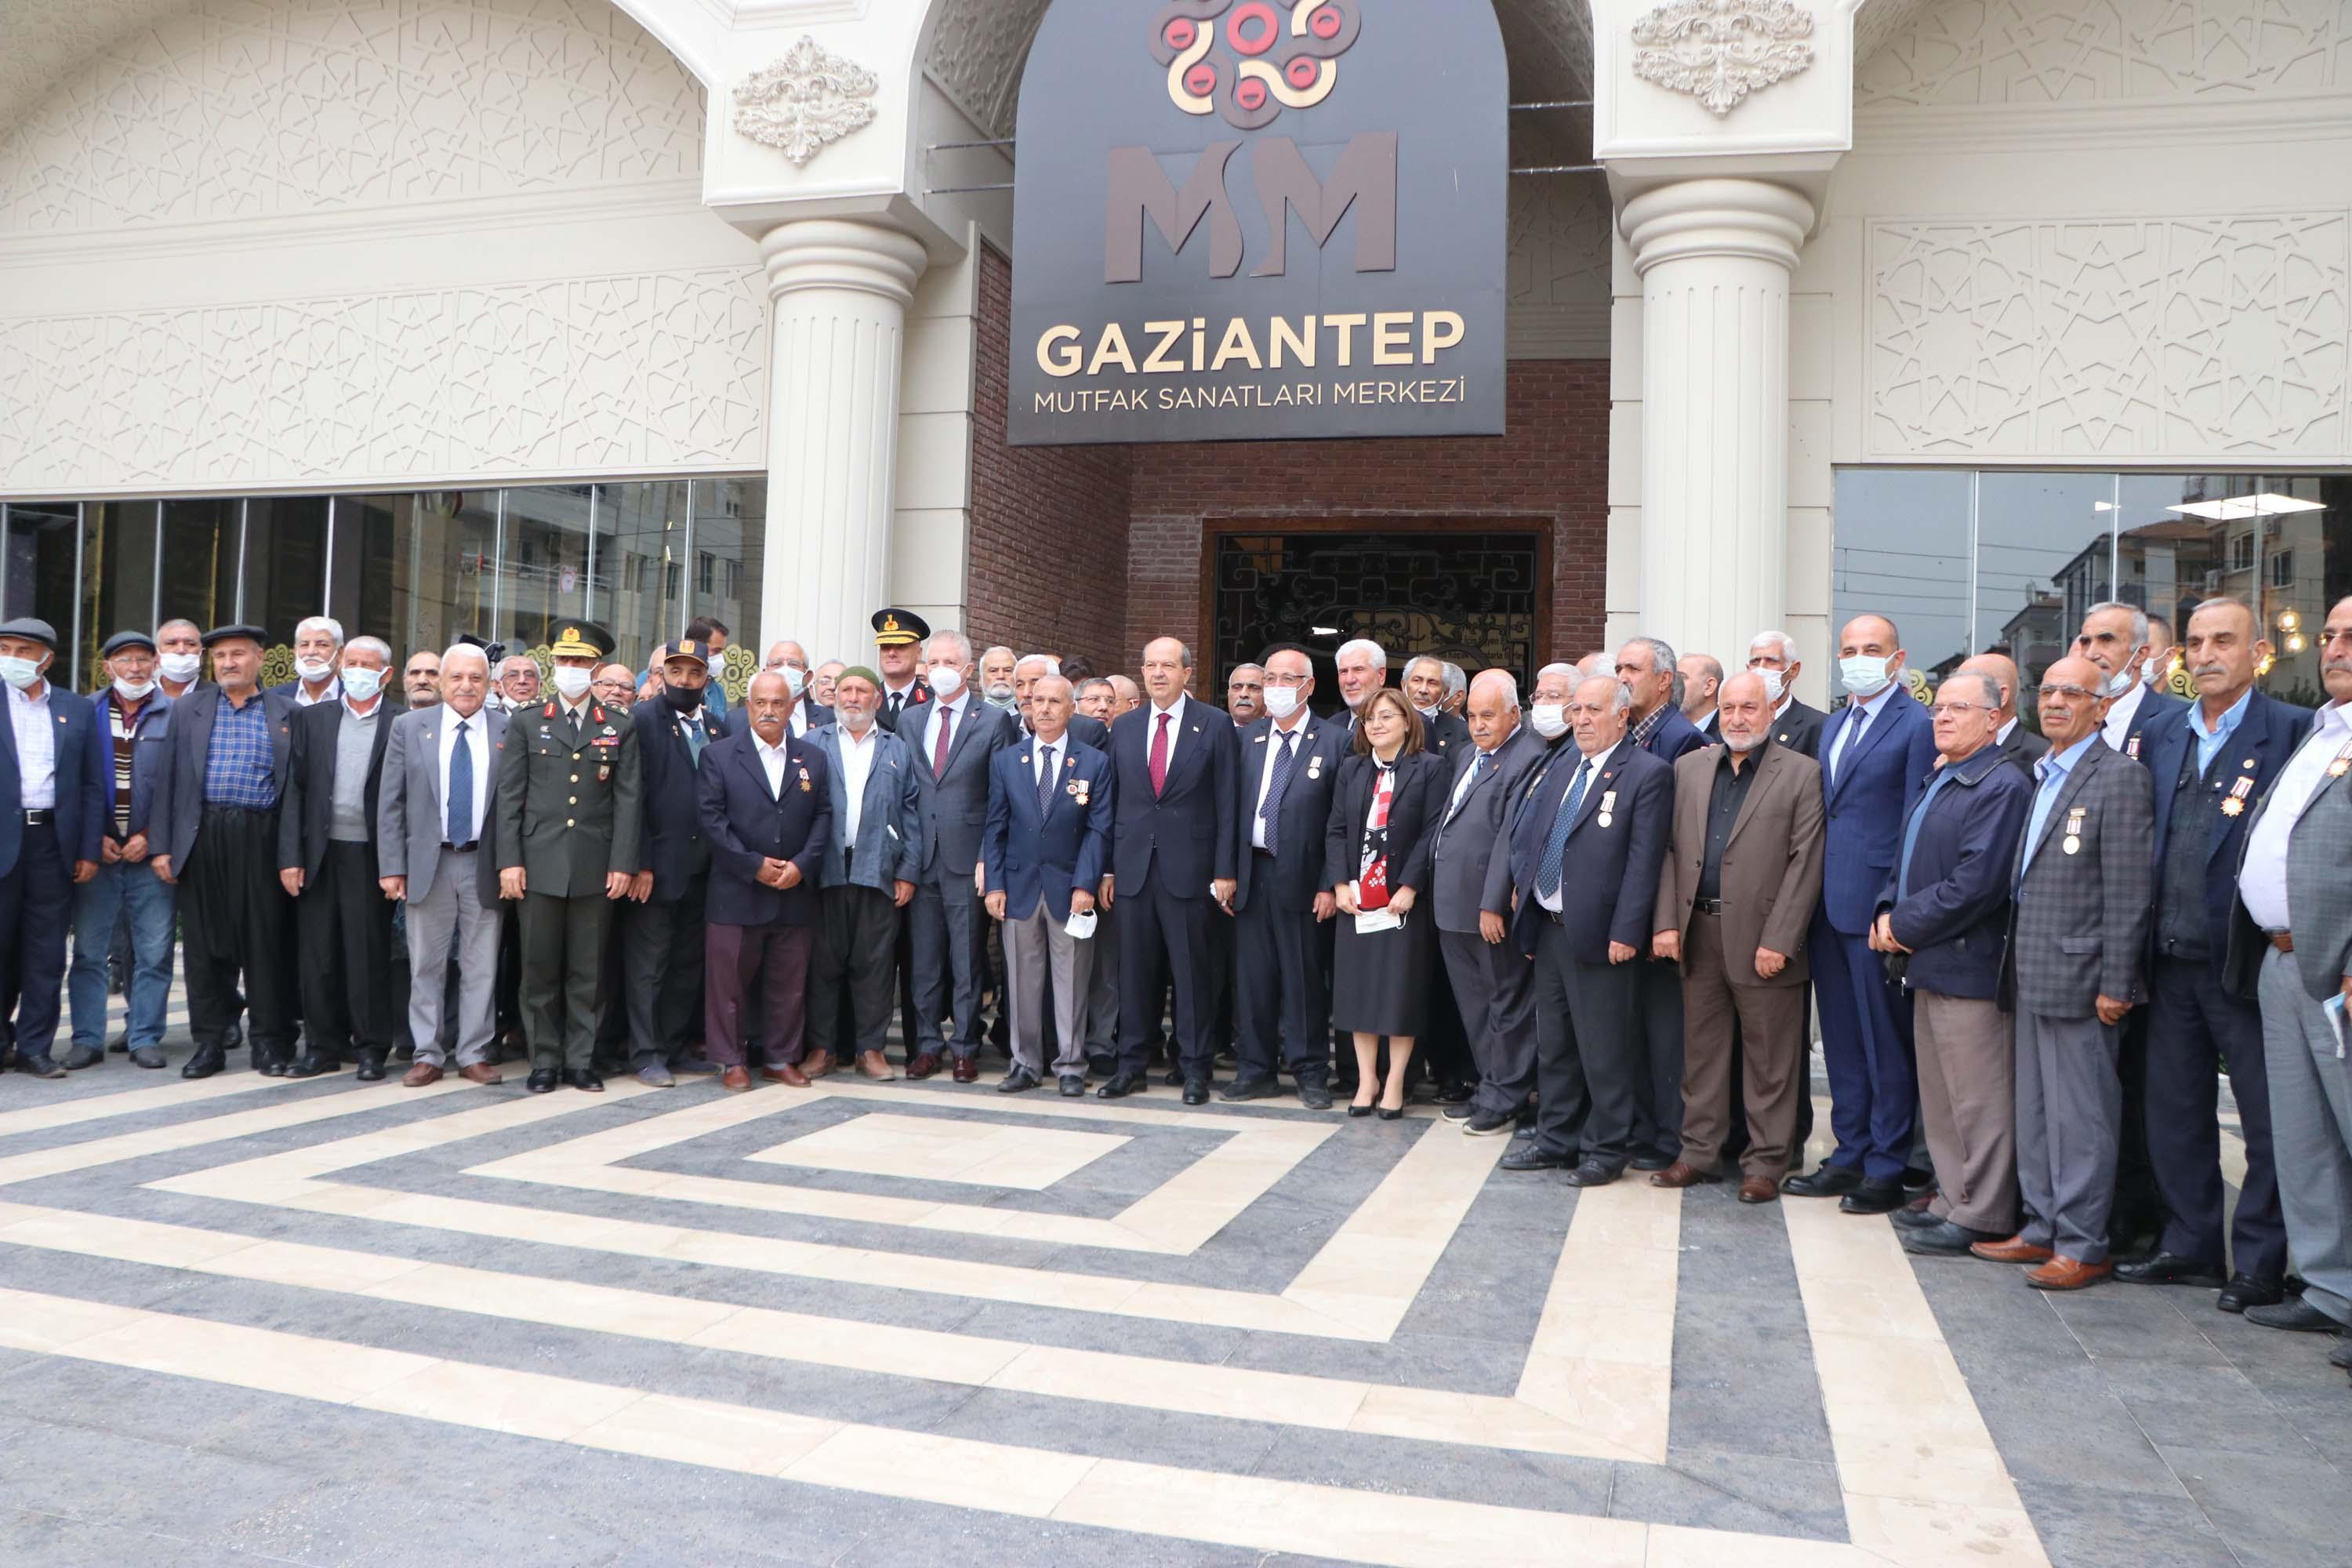 KKTC Cumhurbaşkanı Tatar: Mavi vatanda varlığımızı sürdürmekte fayda var